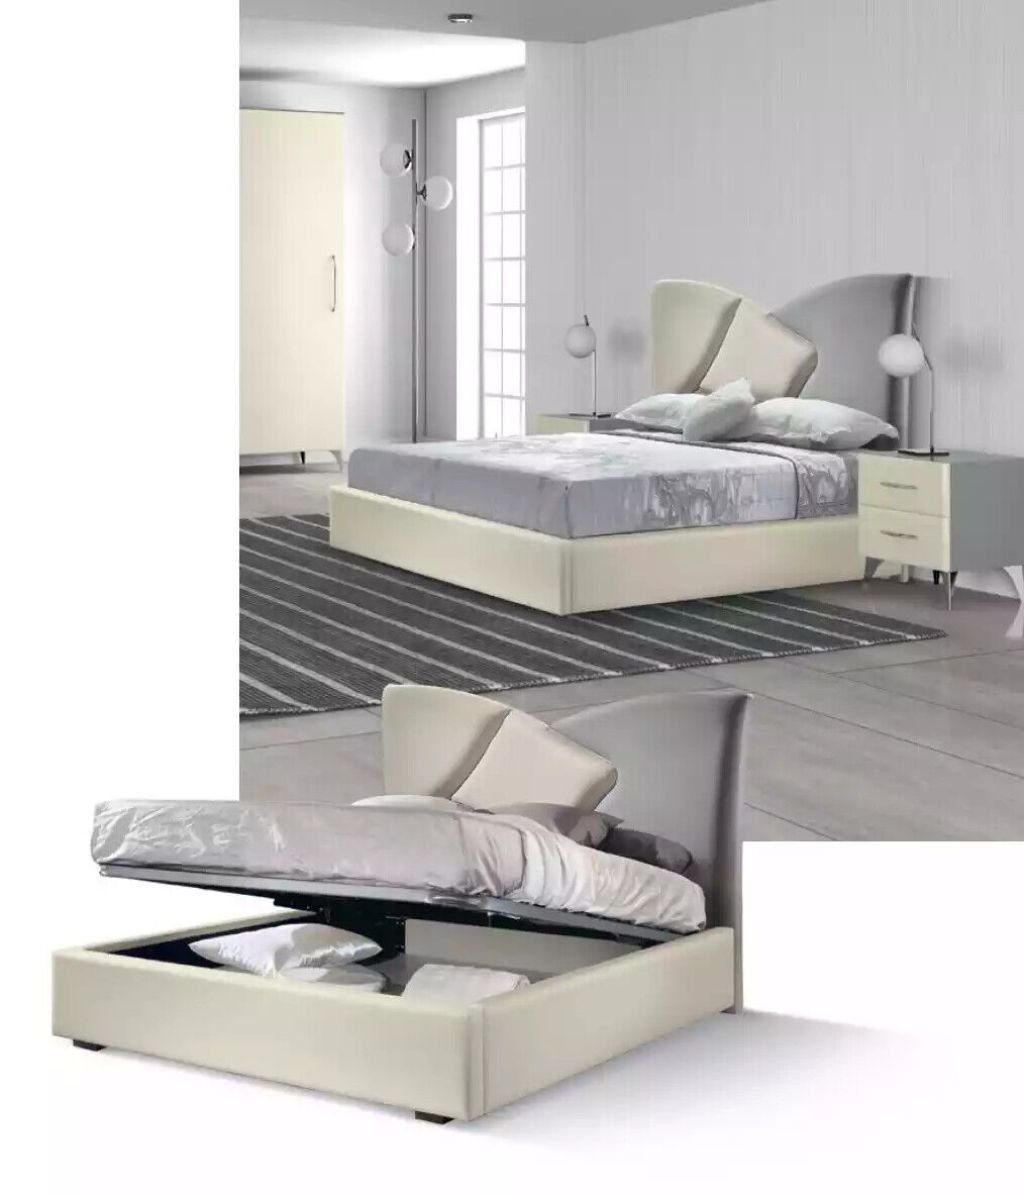 JVmoebel Bett Doppelbett Schlafzimmer Möbel Betten Italienische Stil Einrichtung (1-tlg., 1x nur Bett)